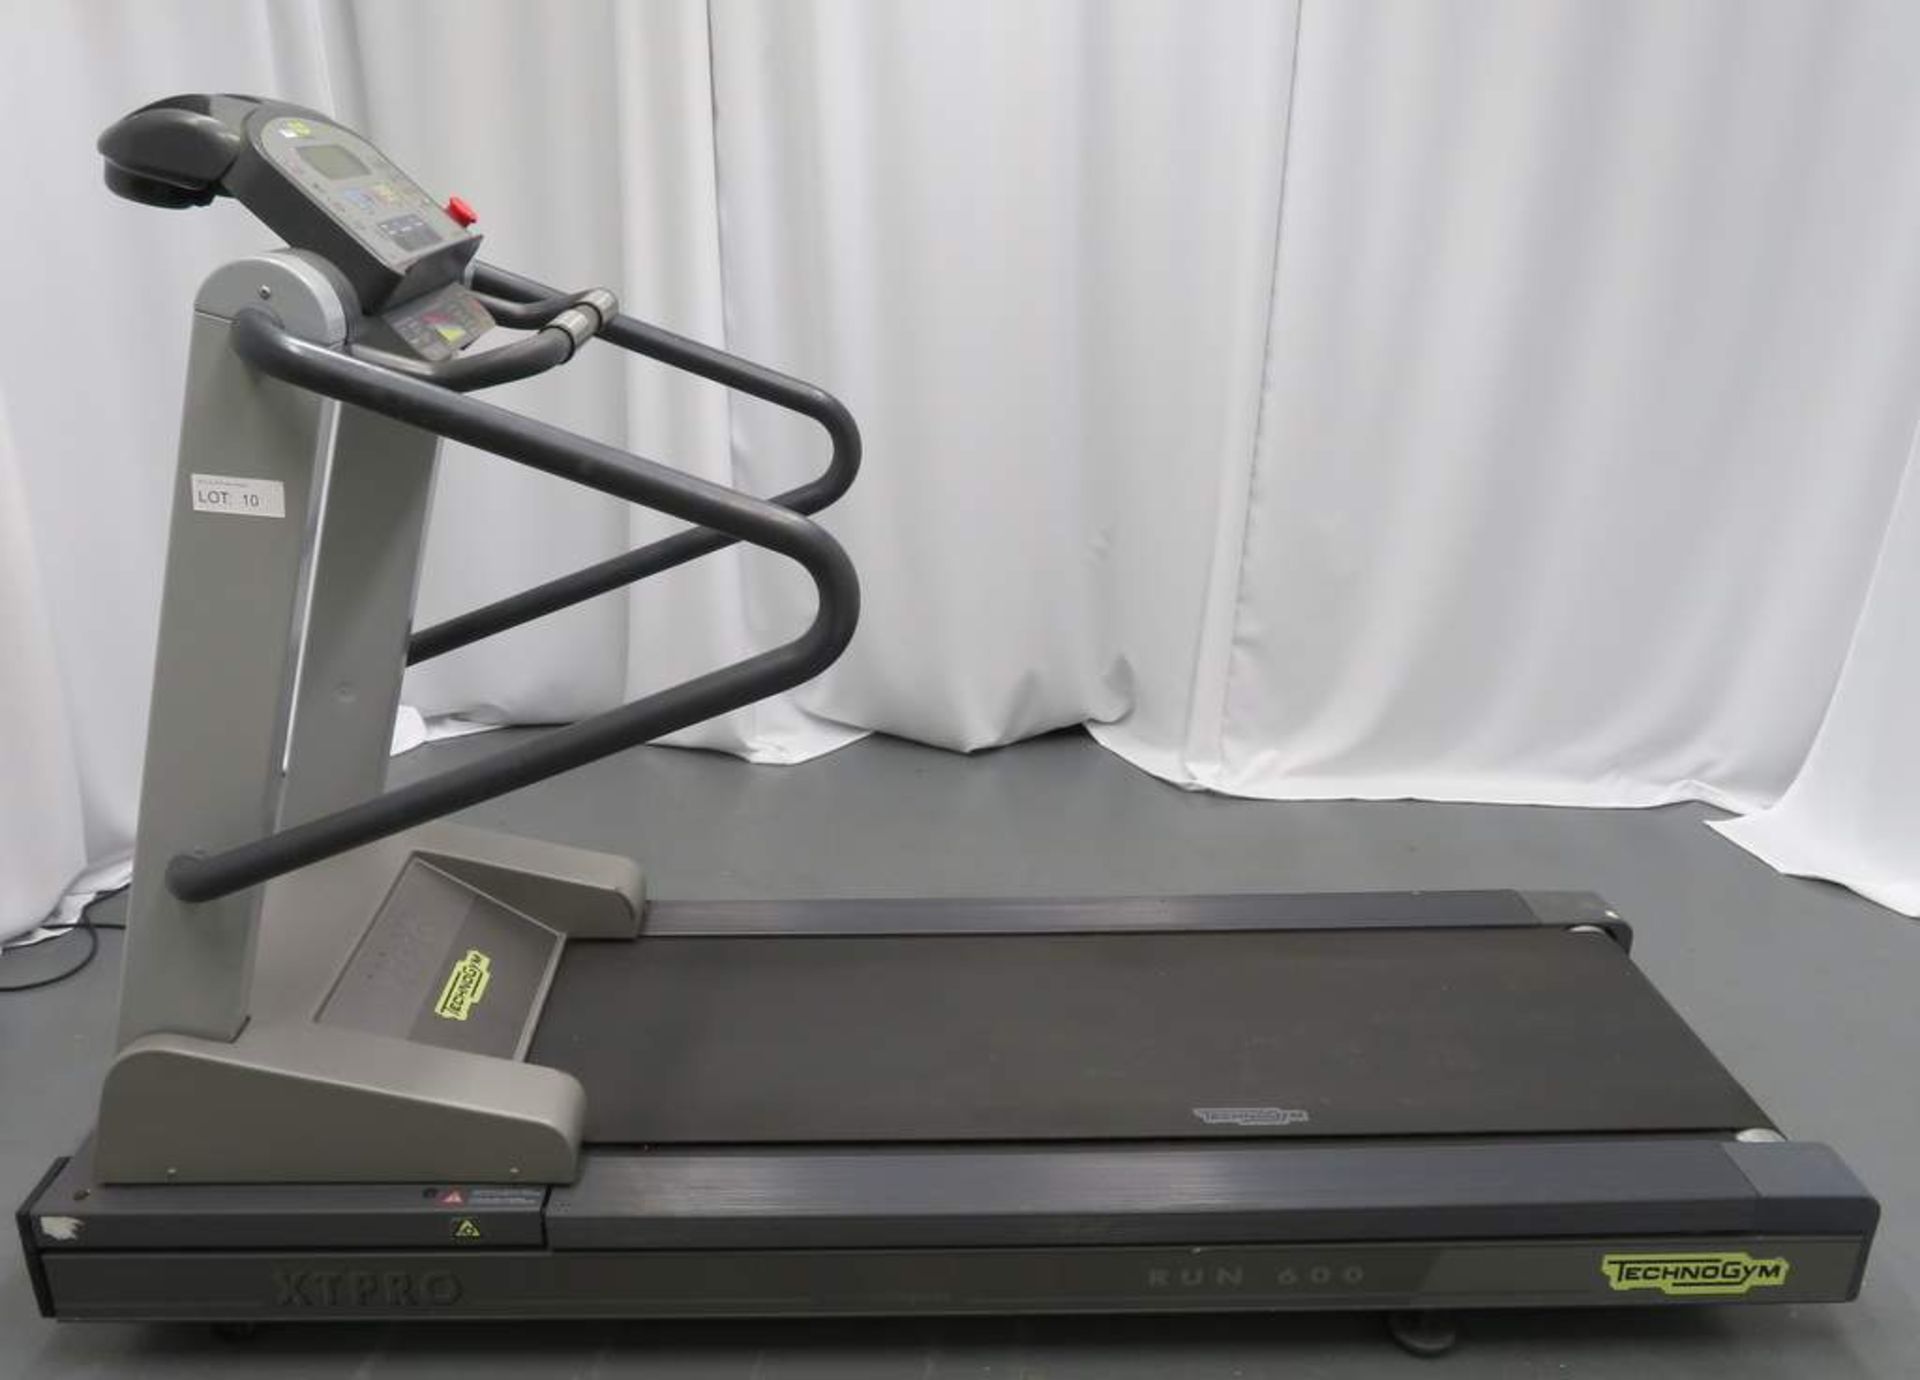 Technogym, Model: XT PRO Run 600, Treadmill.